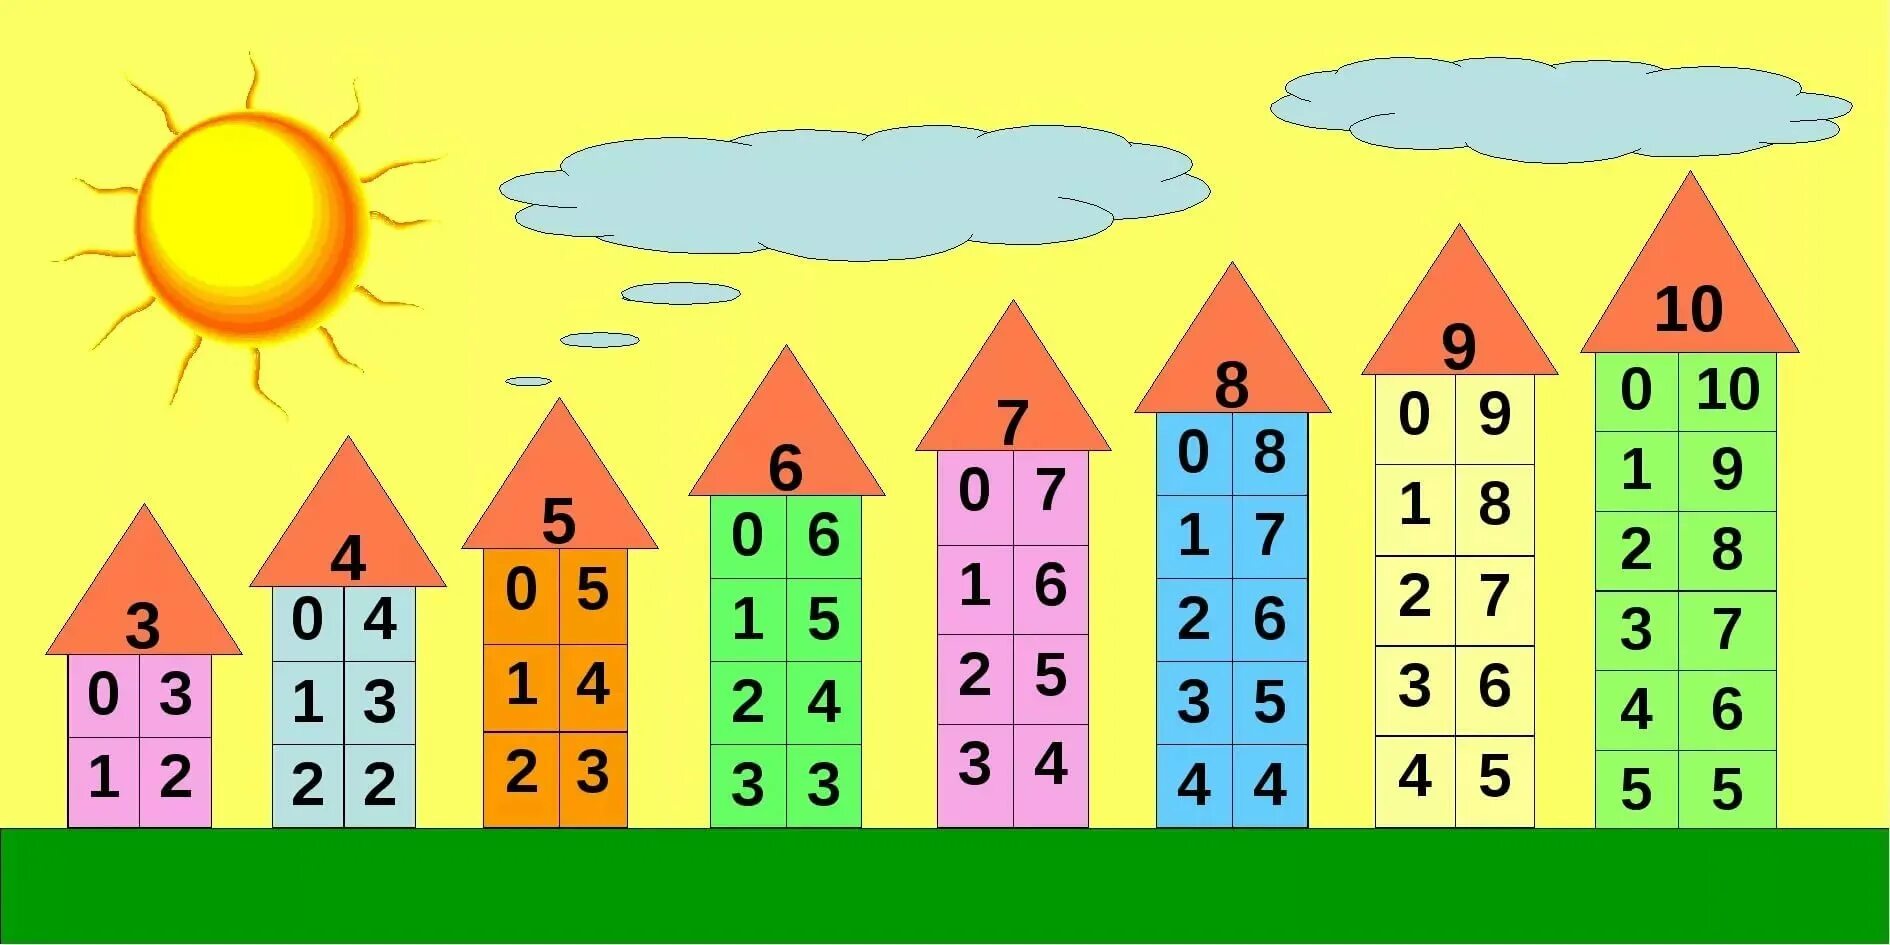 Таблица состава числа до 10 распечатать домики. Состав числа до 10 домики. Состав числа 10 числовые домики. Состав чисел от 2 до 7. Состав числа от 1 до 10 домики.